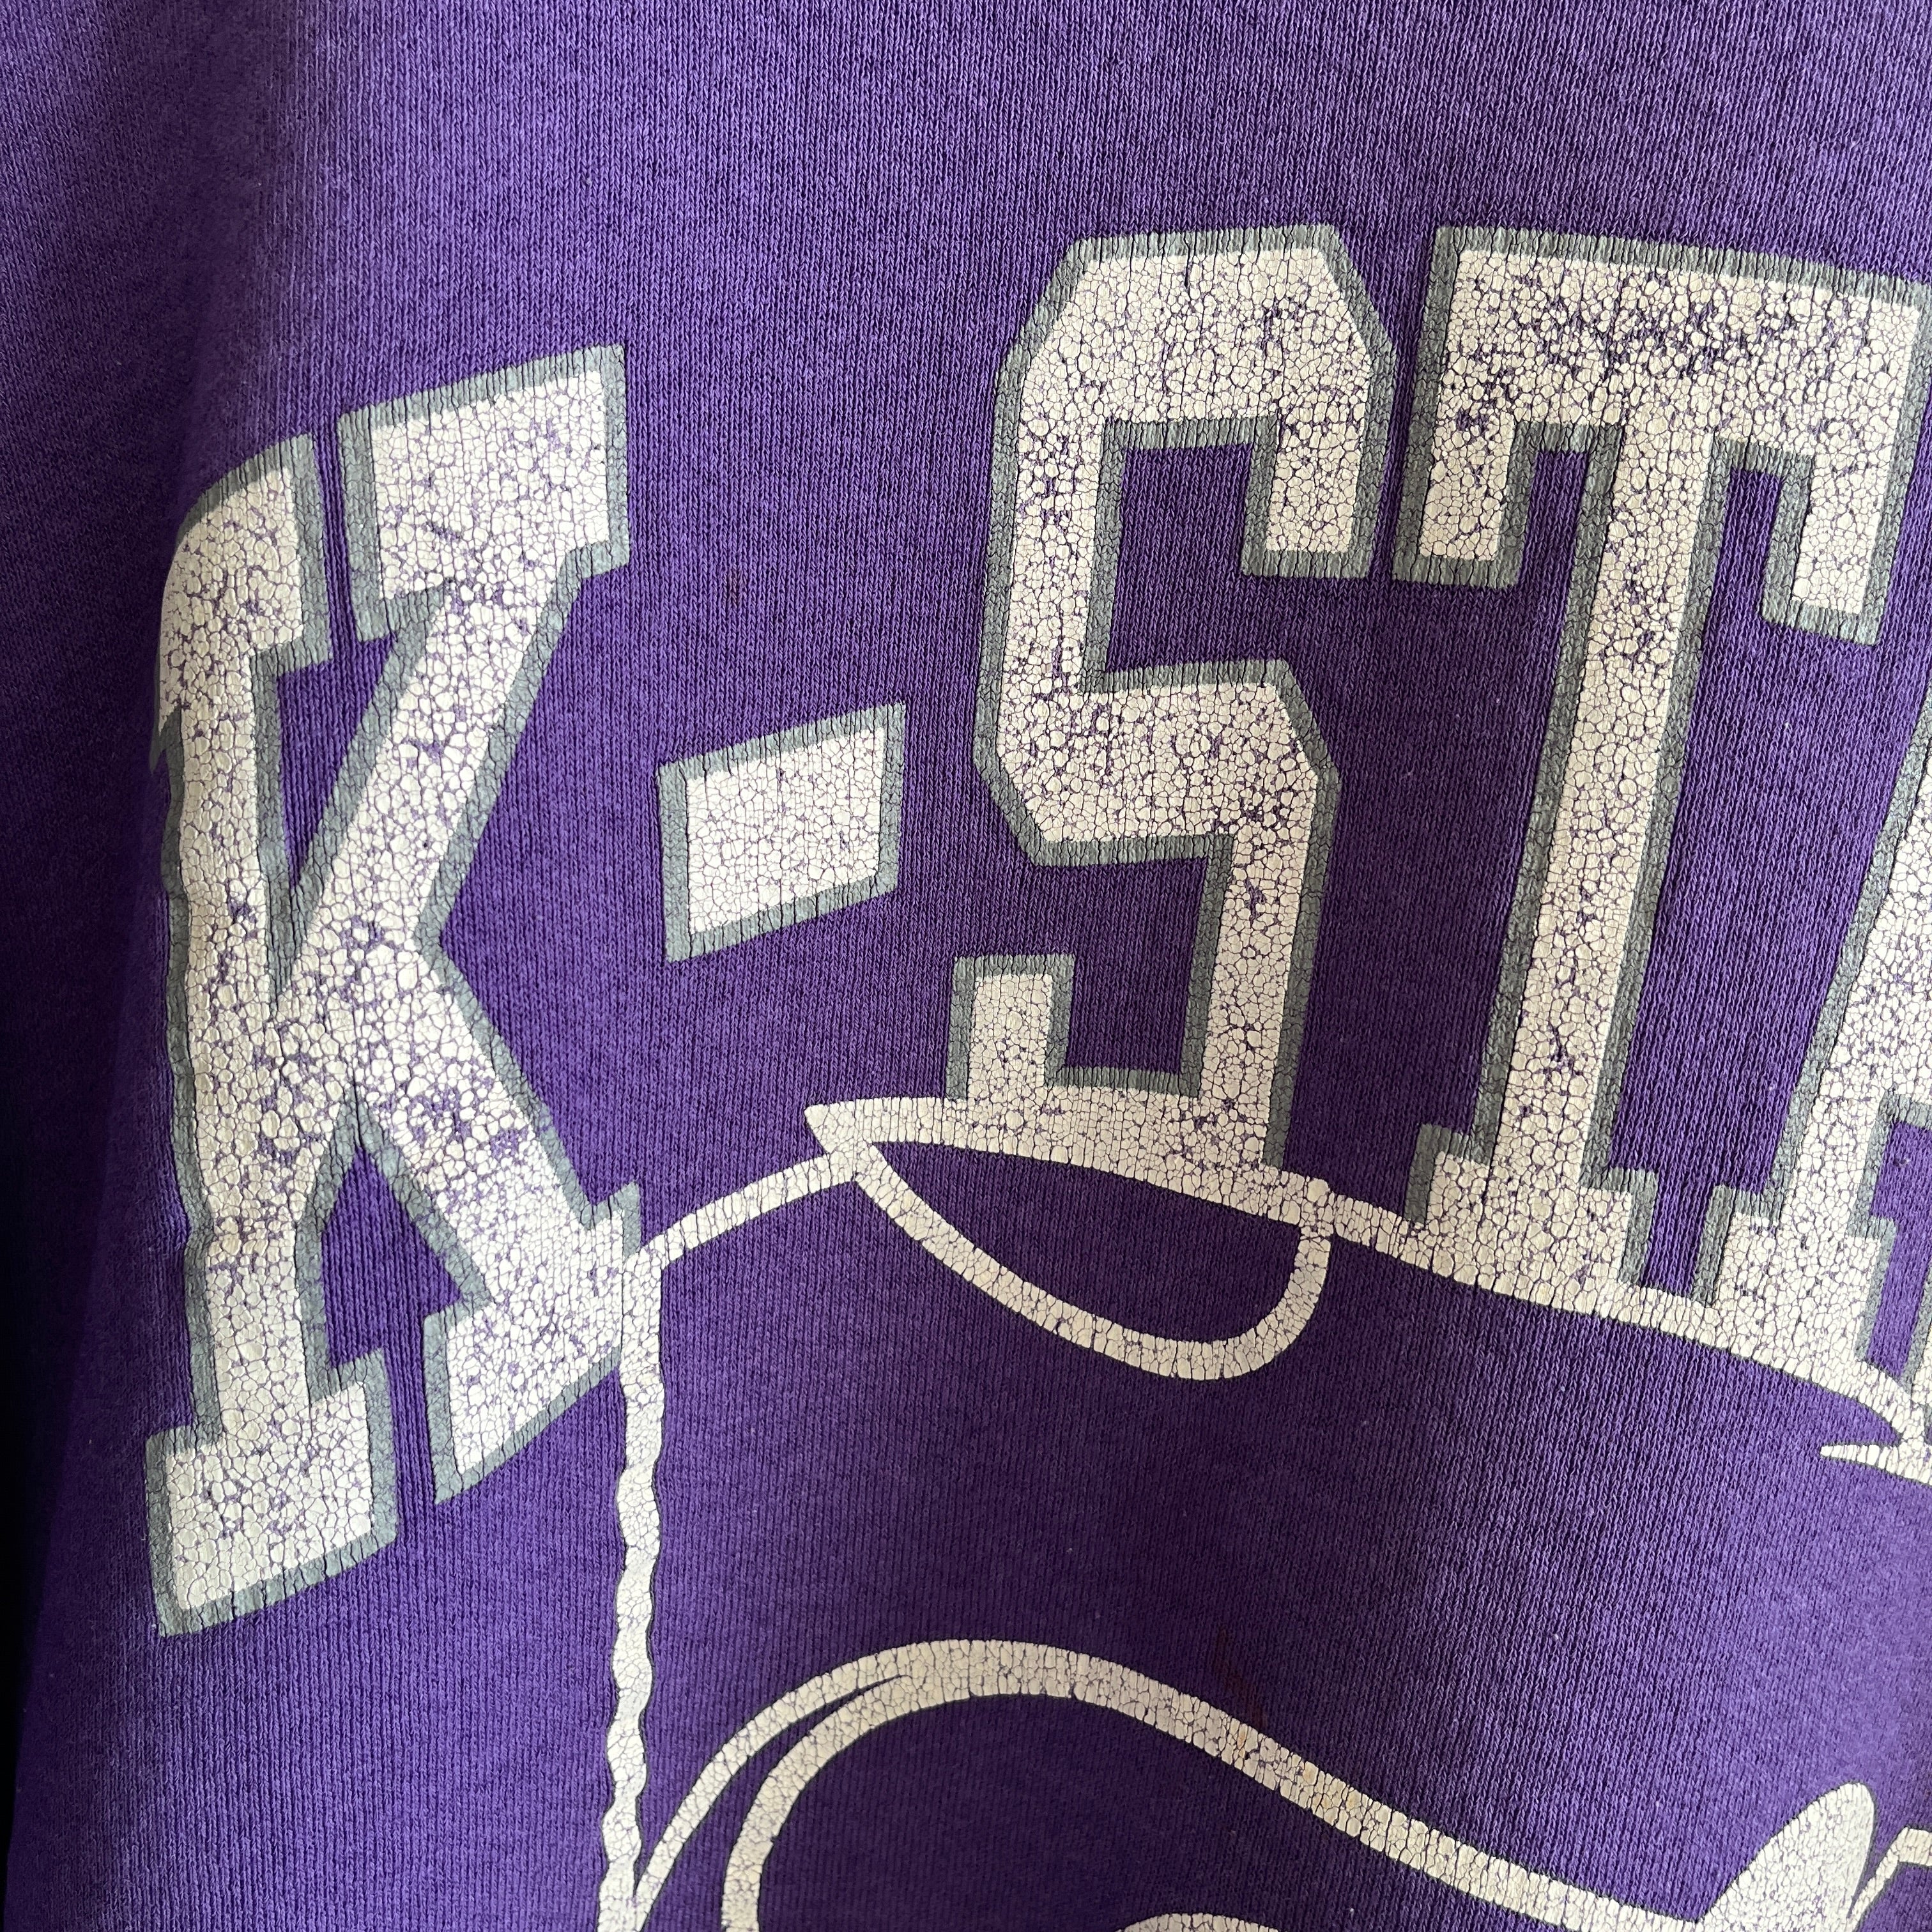 1990s Kansas State Wildcats Sweatshirt